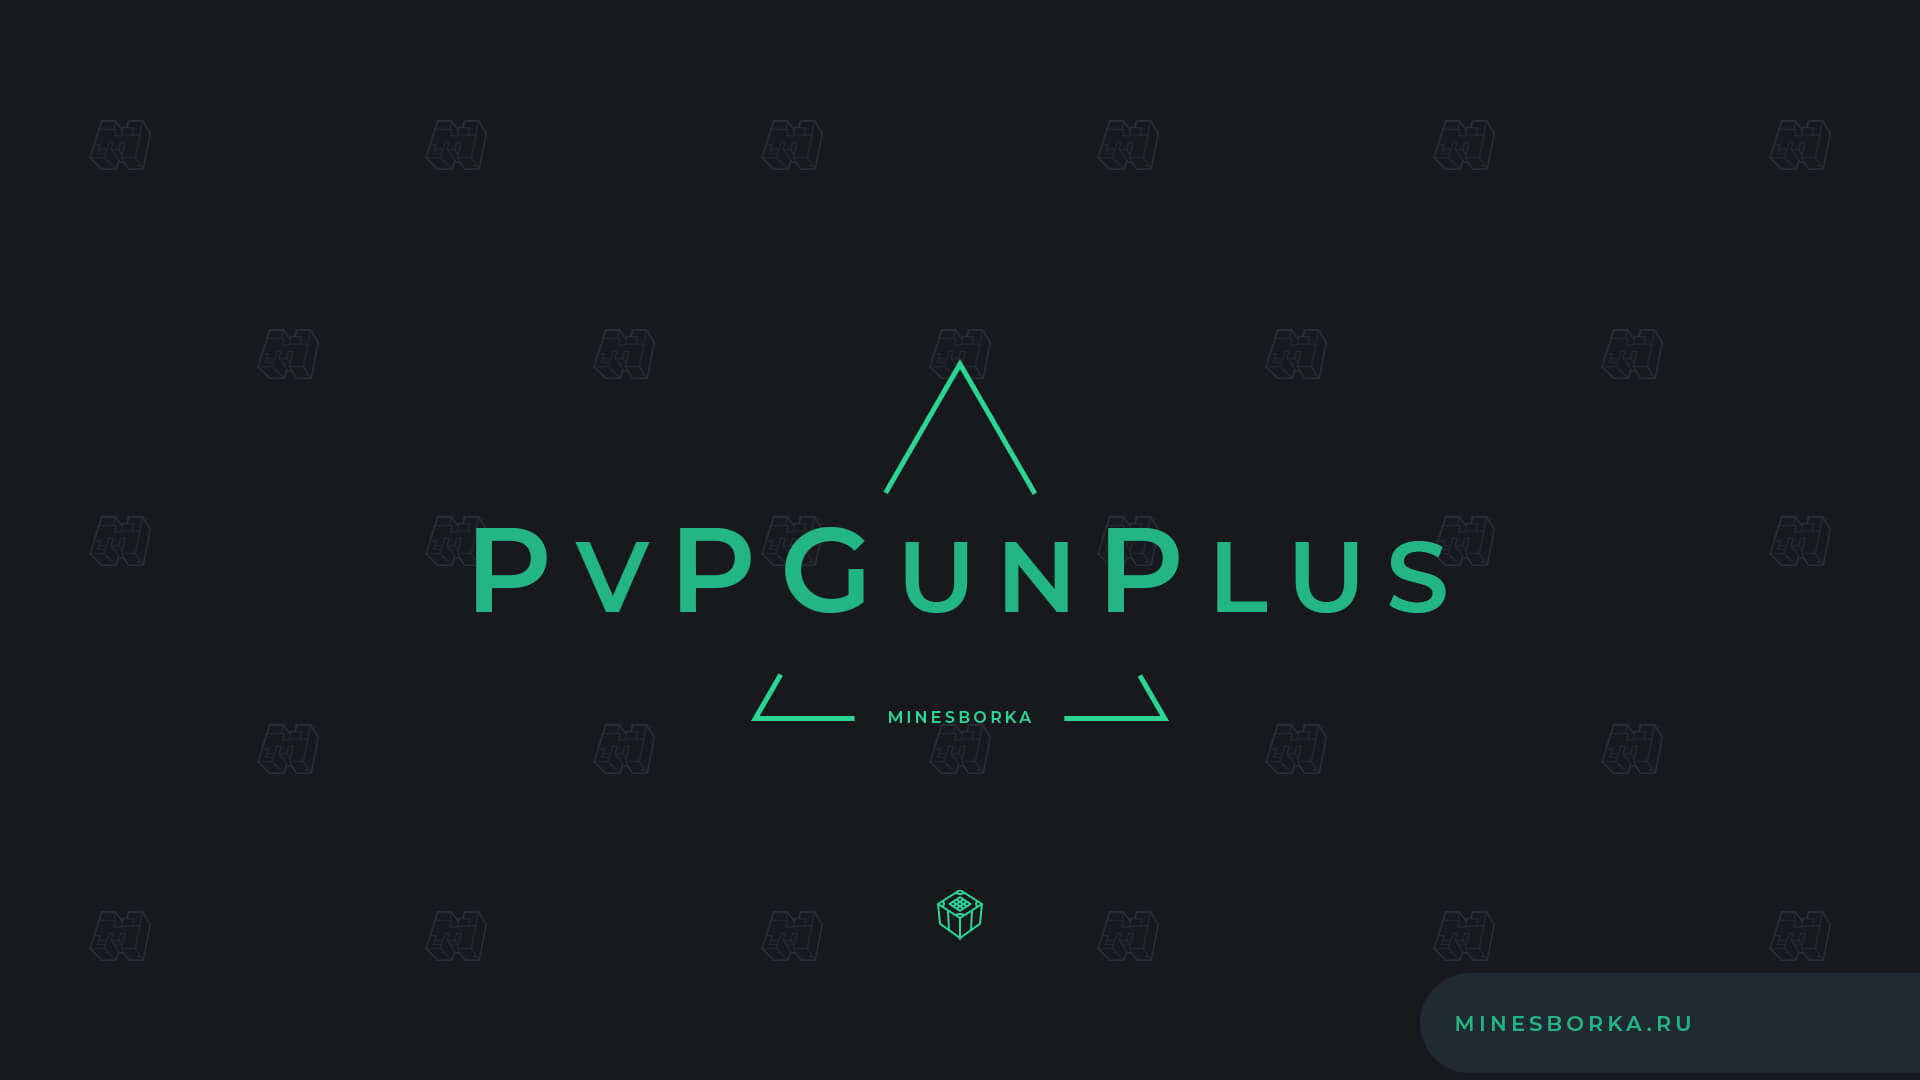 Скачать плагин PvPGunPlus | Оружие без модов на сервере майнкрафт